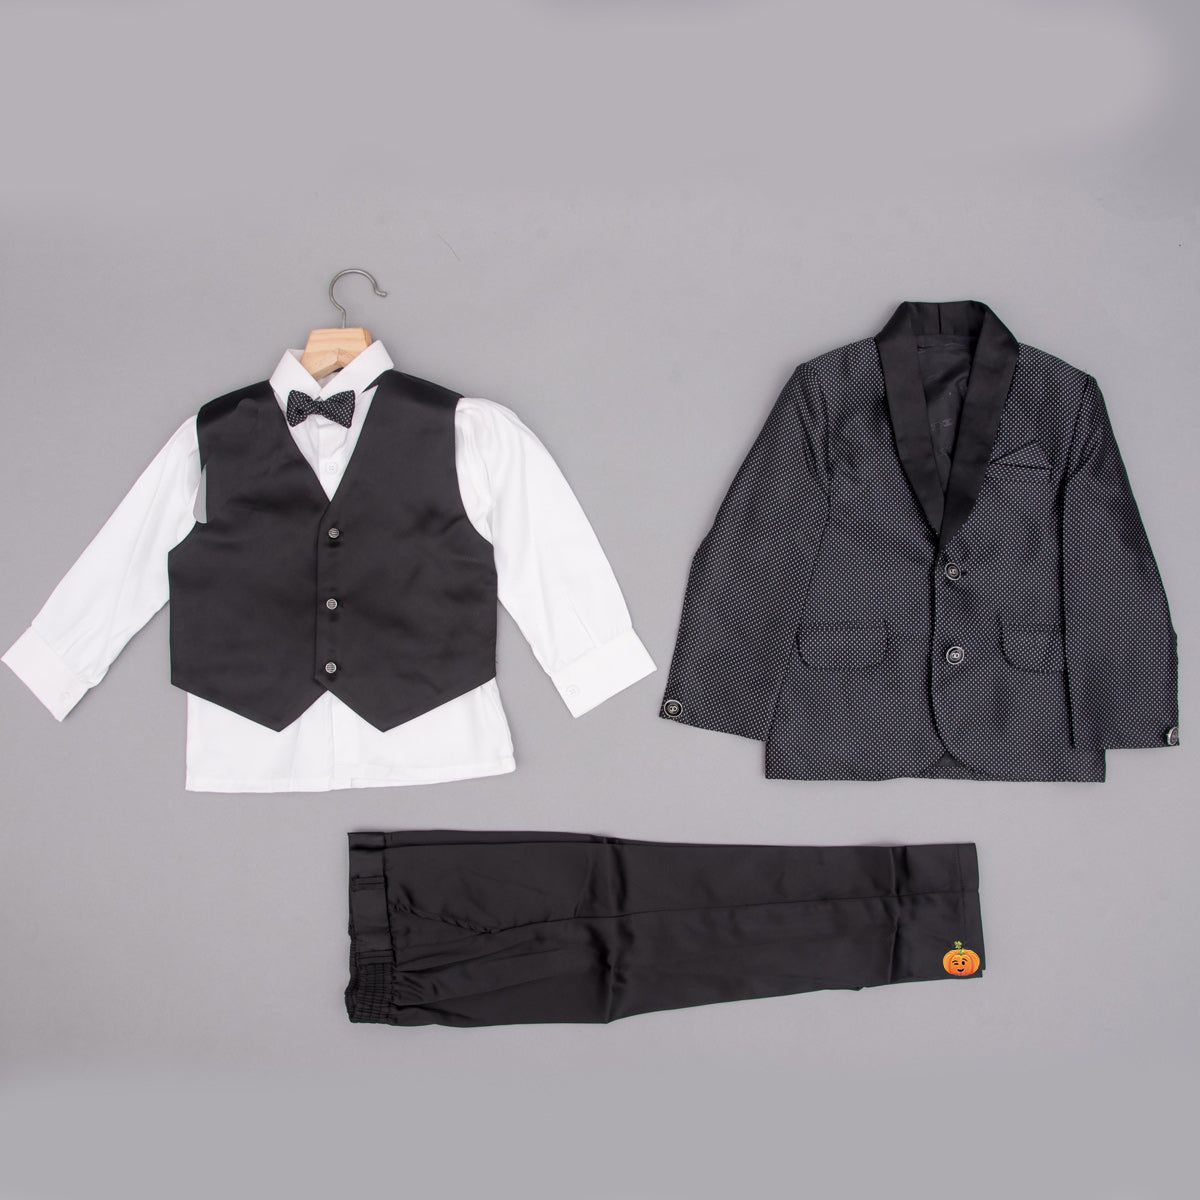 Montu Bunty Wear Baby Boys Woollen Sweater Full Suit - 4 Pcs Set (Beige) :  Amazon.in: Clothing & Accessories